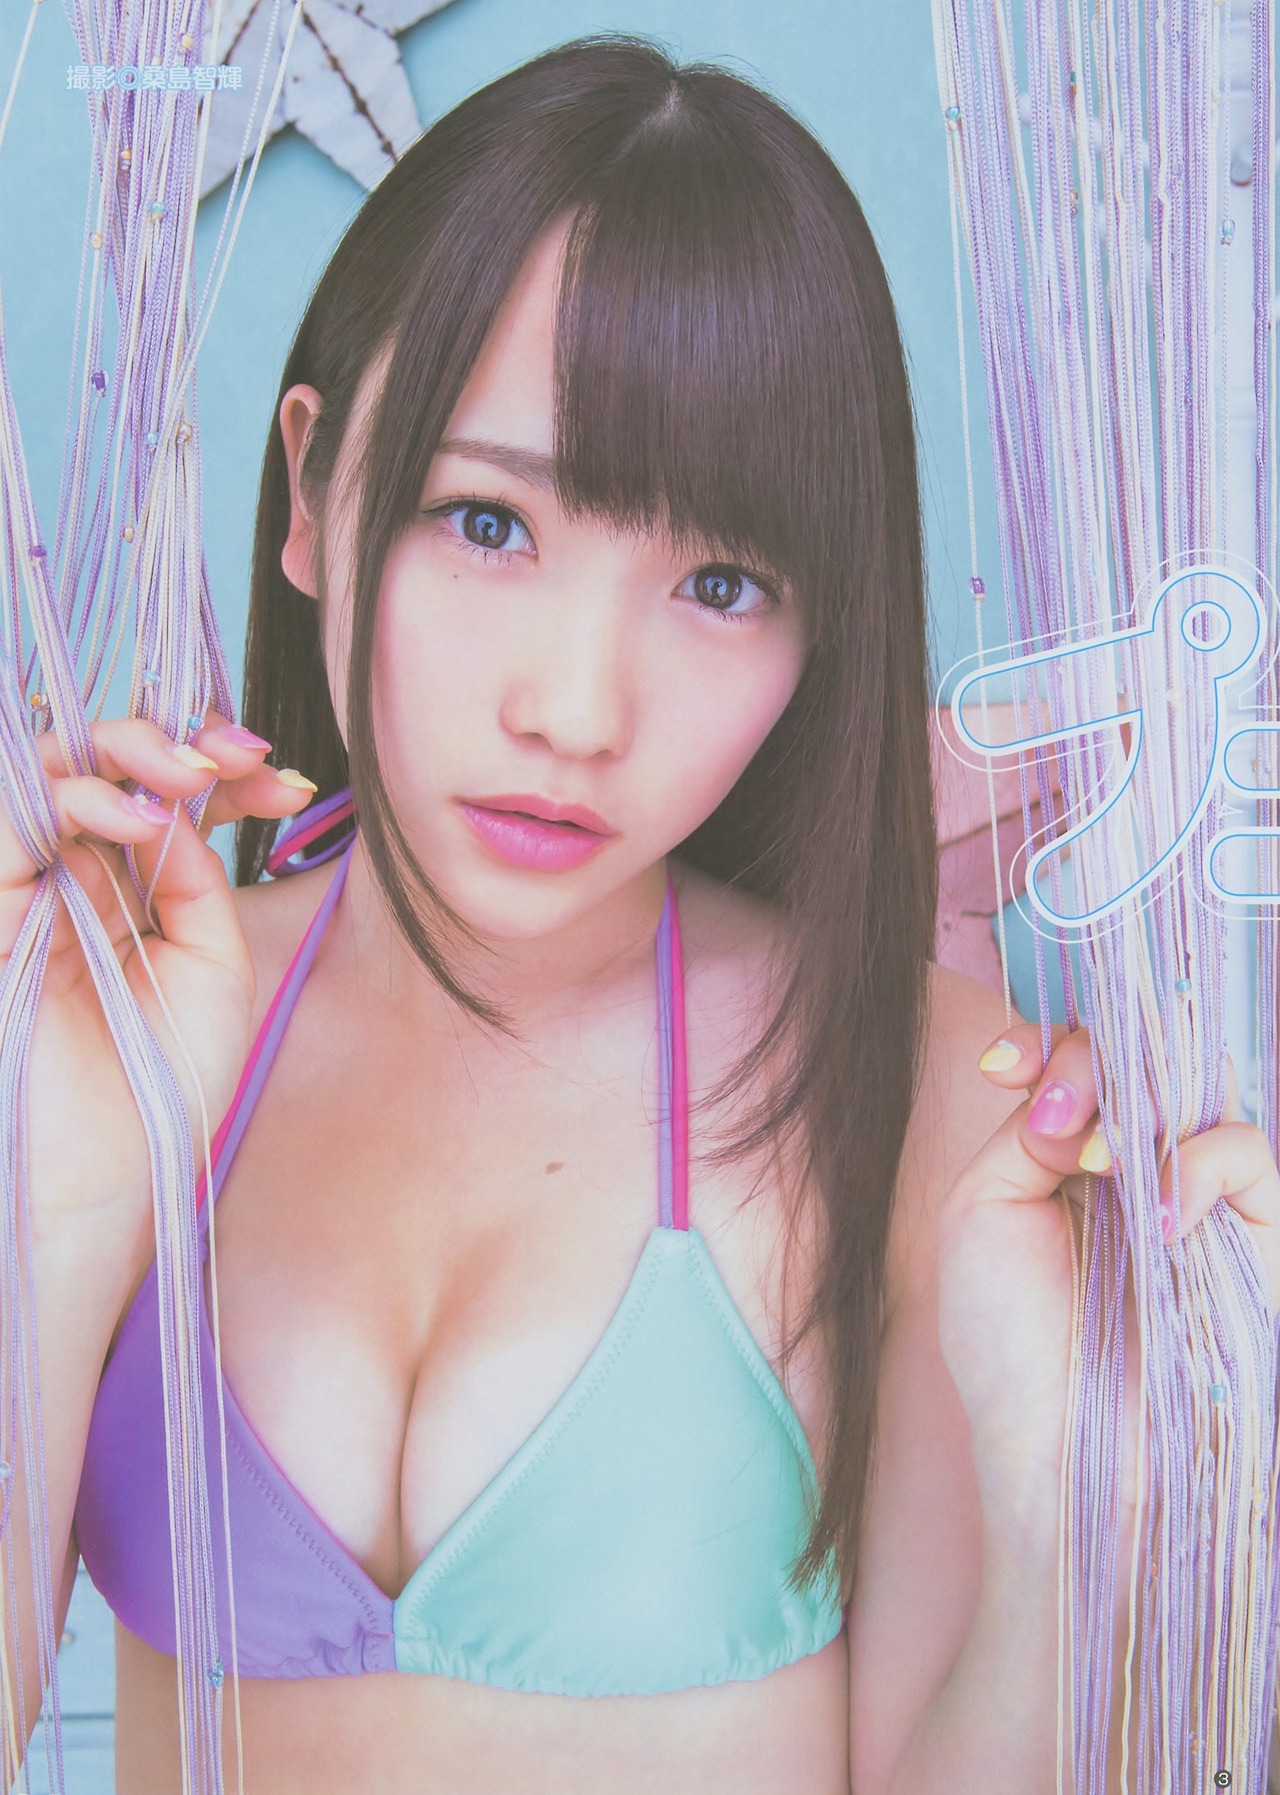 08 - Kawaei Rina - Top 10 Most Erotic AKB48 SKE48 NMB48 HKT48 Members